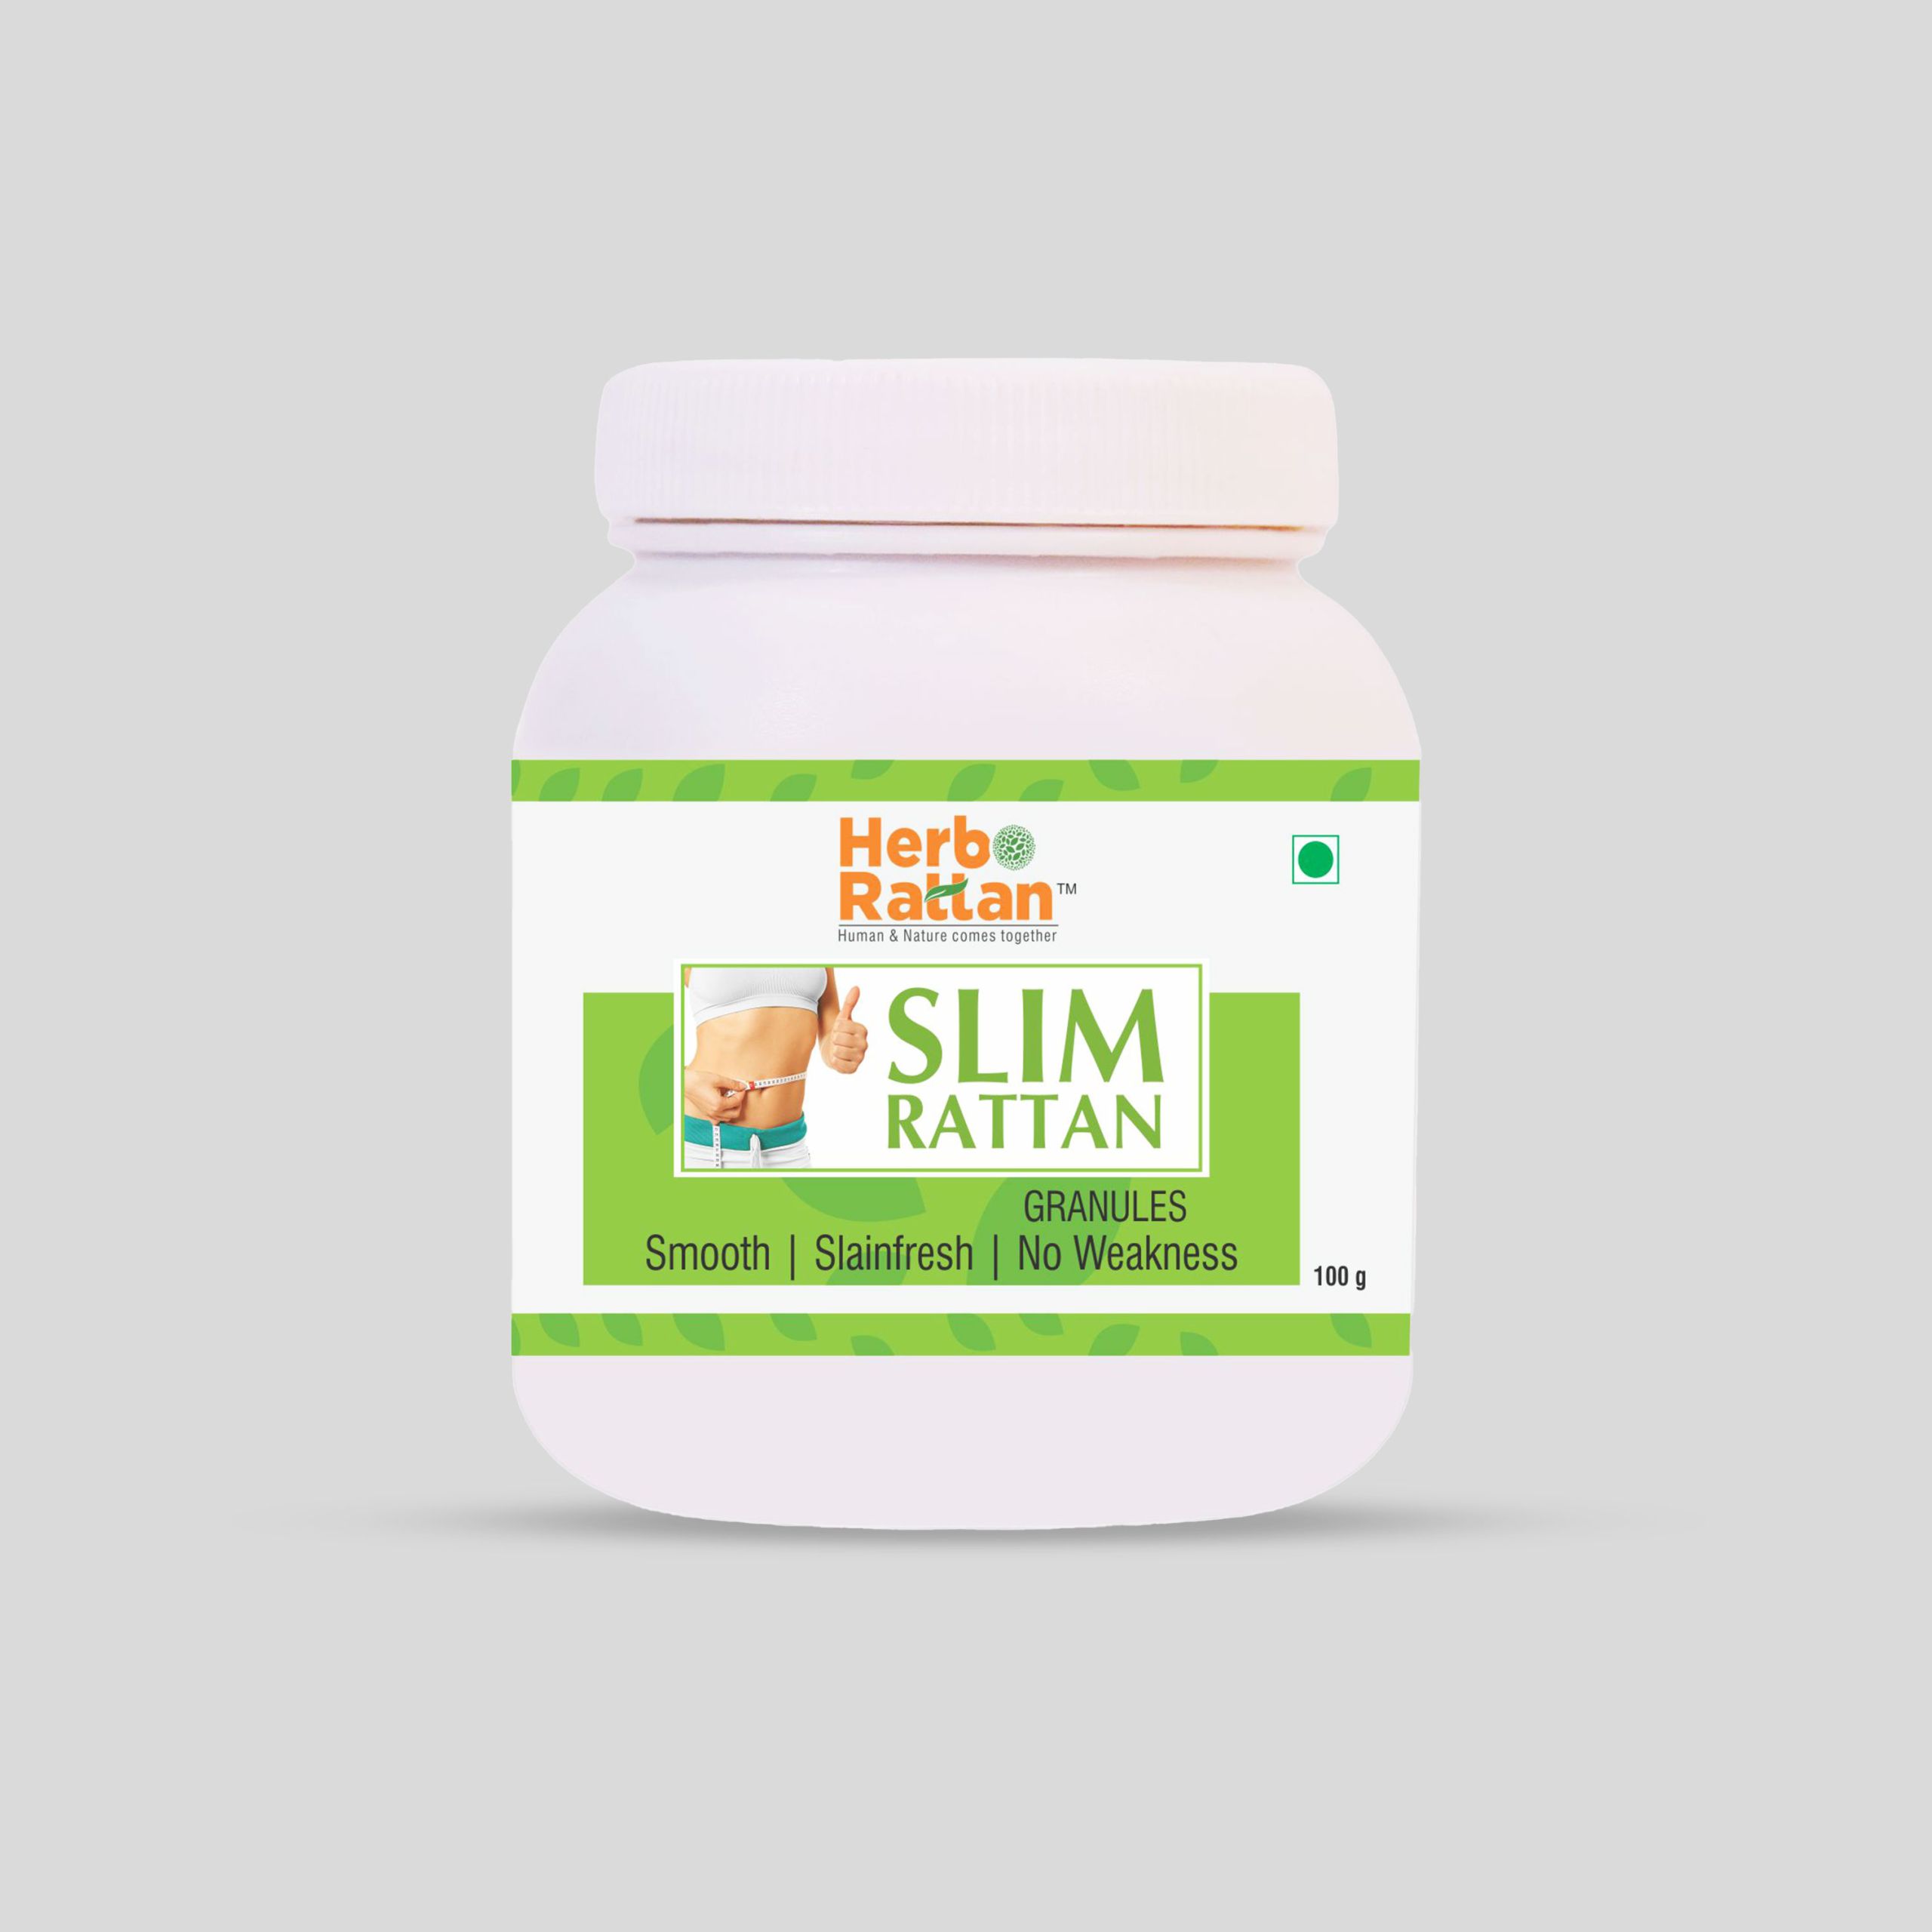 Herbo Rattan Slim Rattan Granules – 100 gm